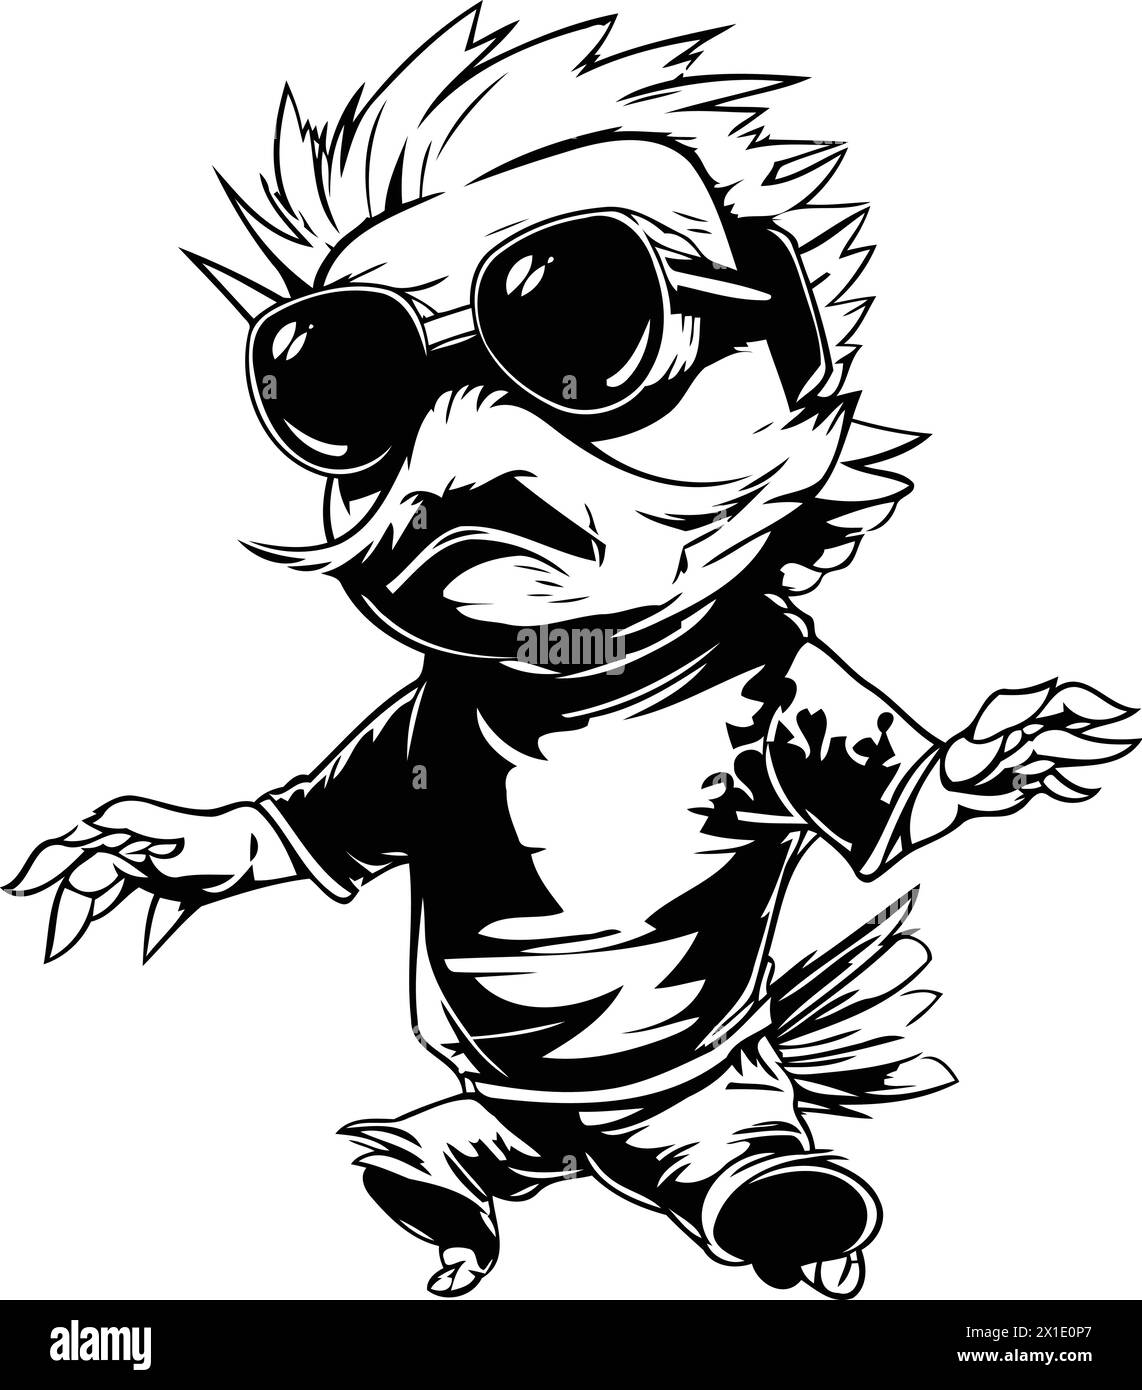 Illustration vectorielle d'un garçon punk dans des lunettes de soleil sur un fond blanc. Illustration de Vecteur